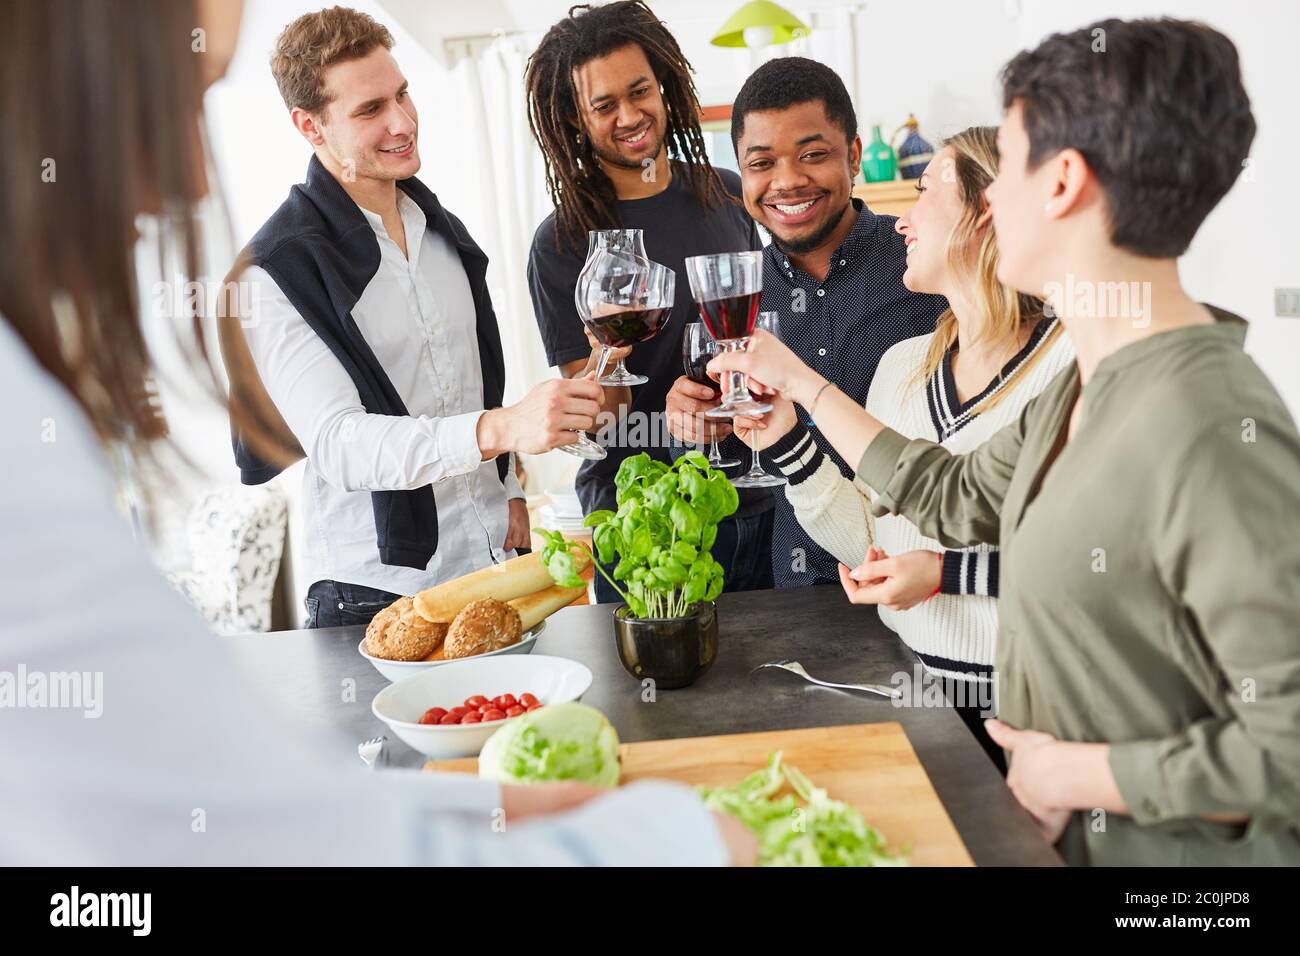 Un groupe d'amis heureux toast avec un verre de vin dans la cuisine avant de manger ensemble Banque D'Images